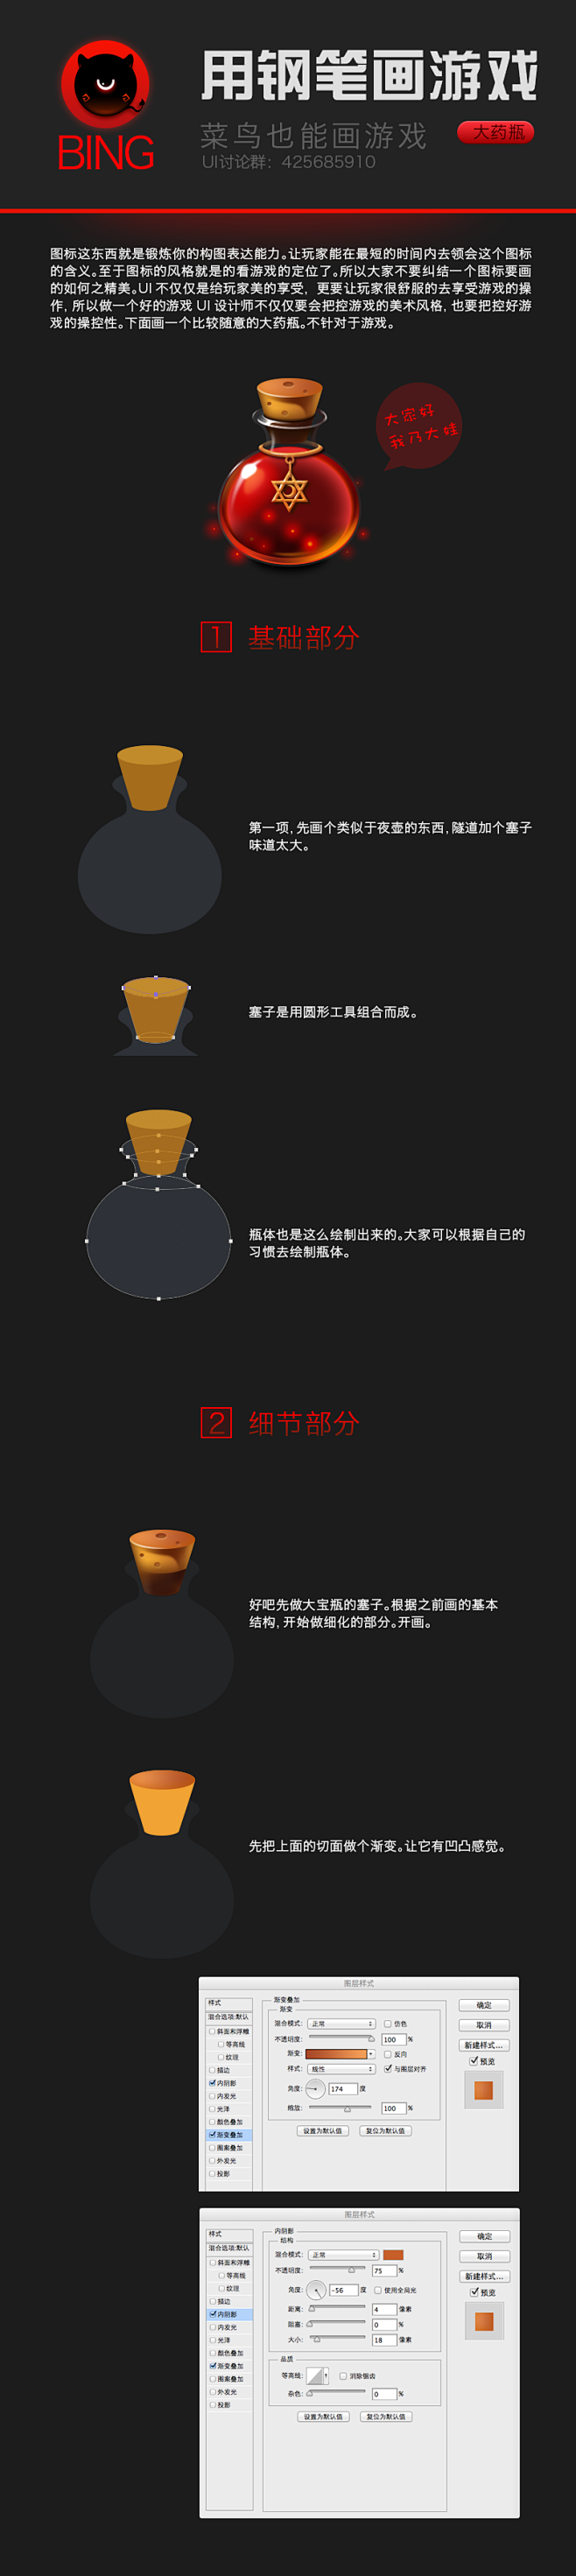 游戏图标UI设计教程-药瓶